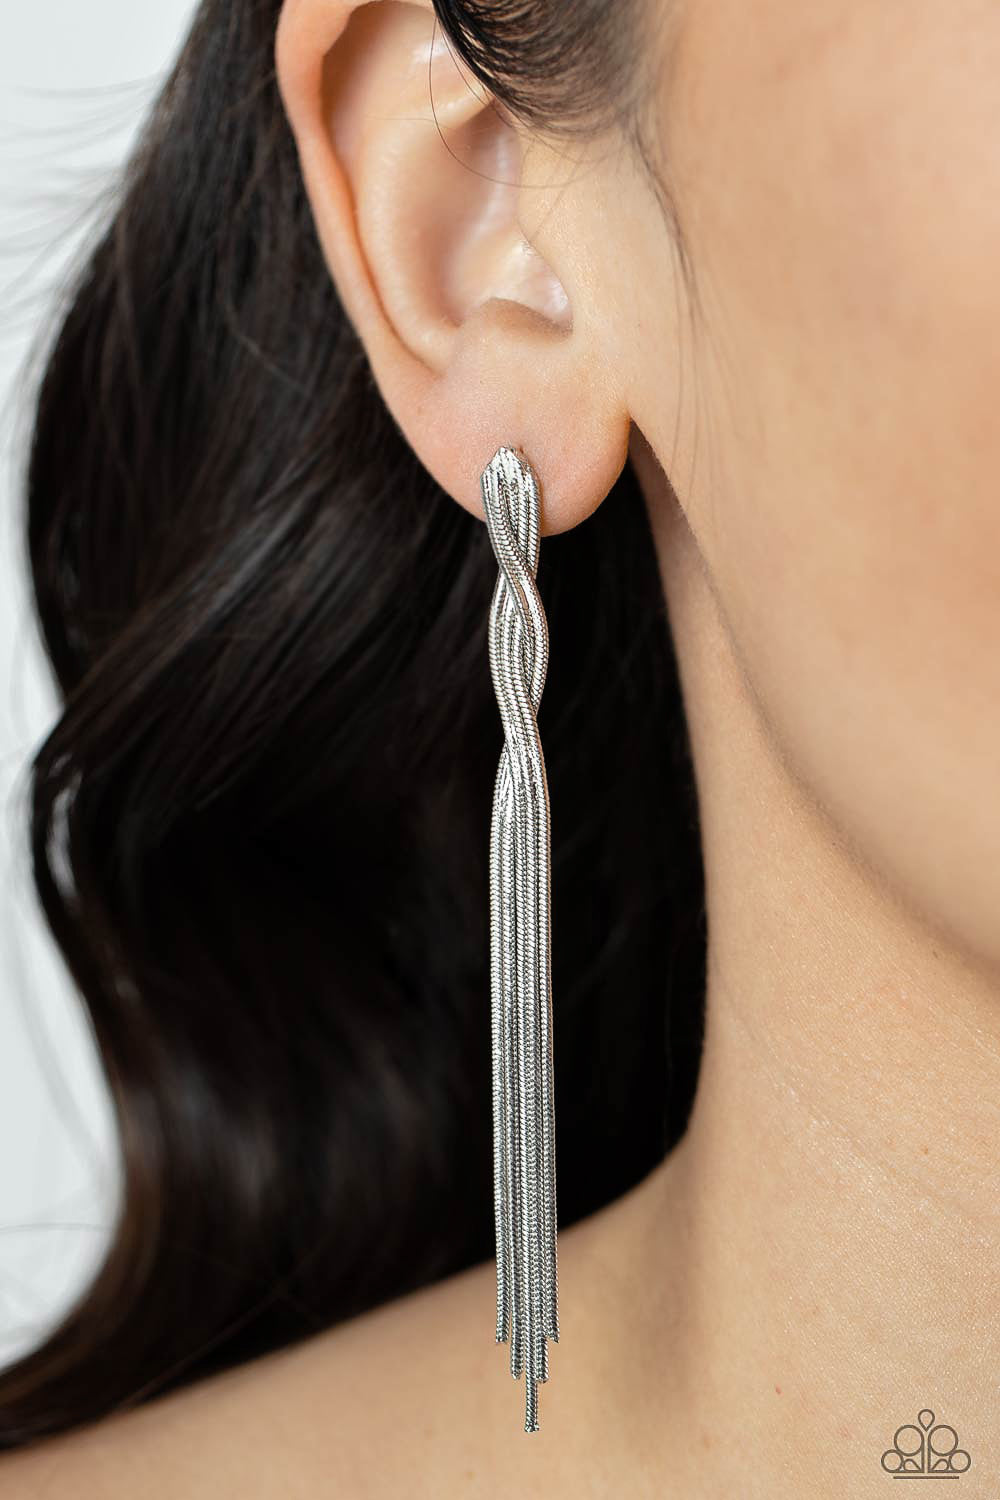 Ropin Rodeo Queen Silver Earrings - Jewelry by Bretta